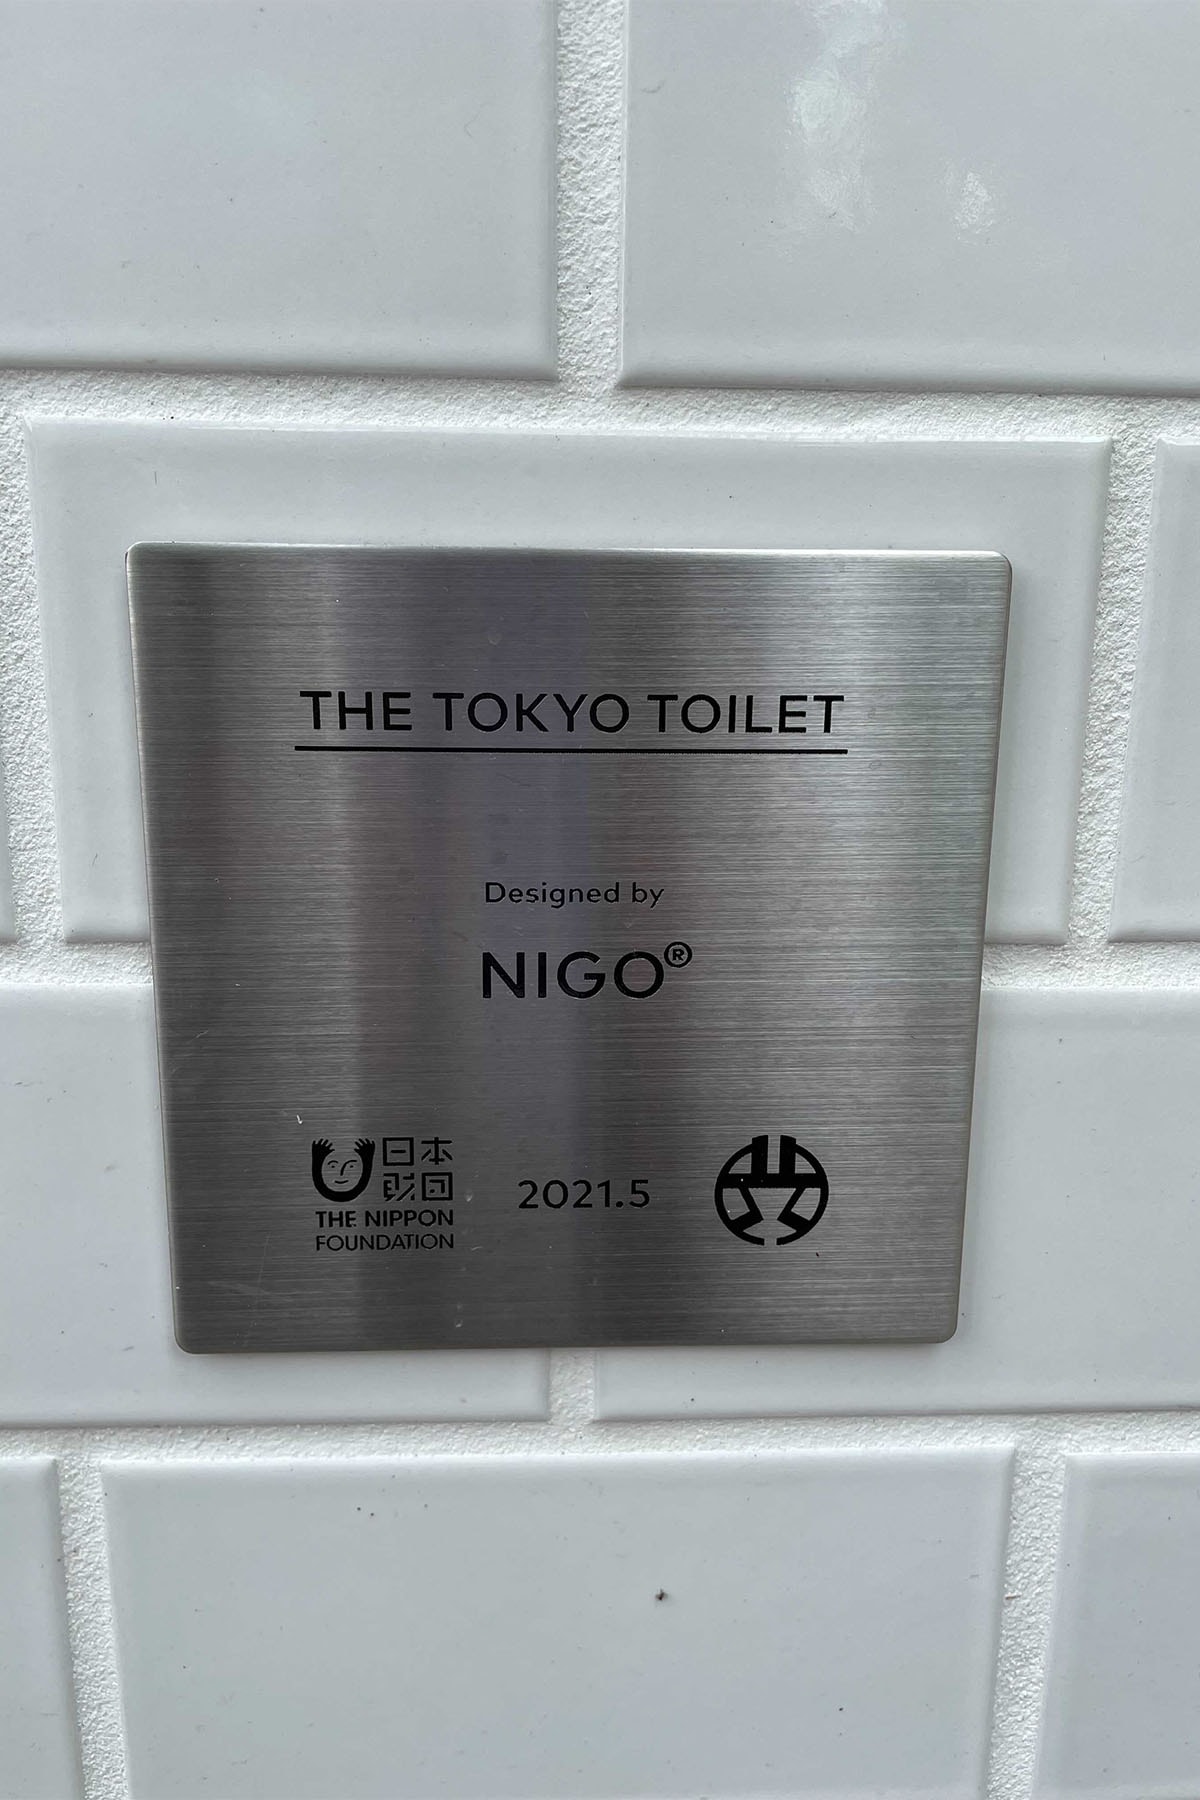 ニゴーがデザインを手掛けた公衆トイレが原宿に誕生 NIGO®️ Design Public Toiret open at harajuku THE TOKYO TOILET project